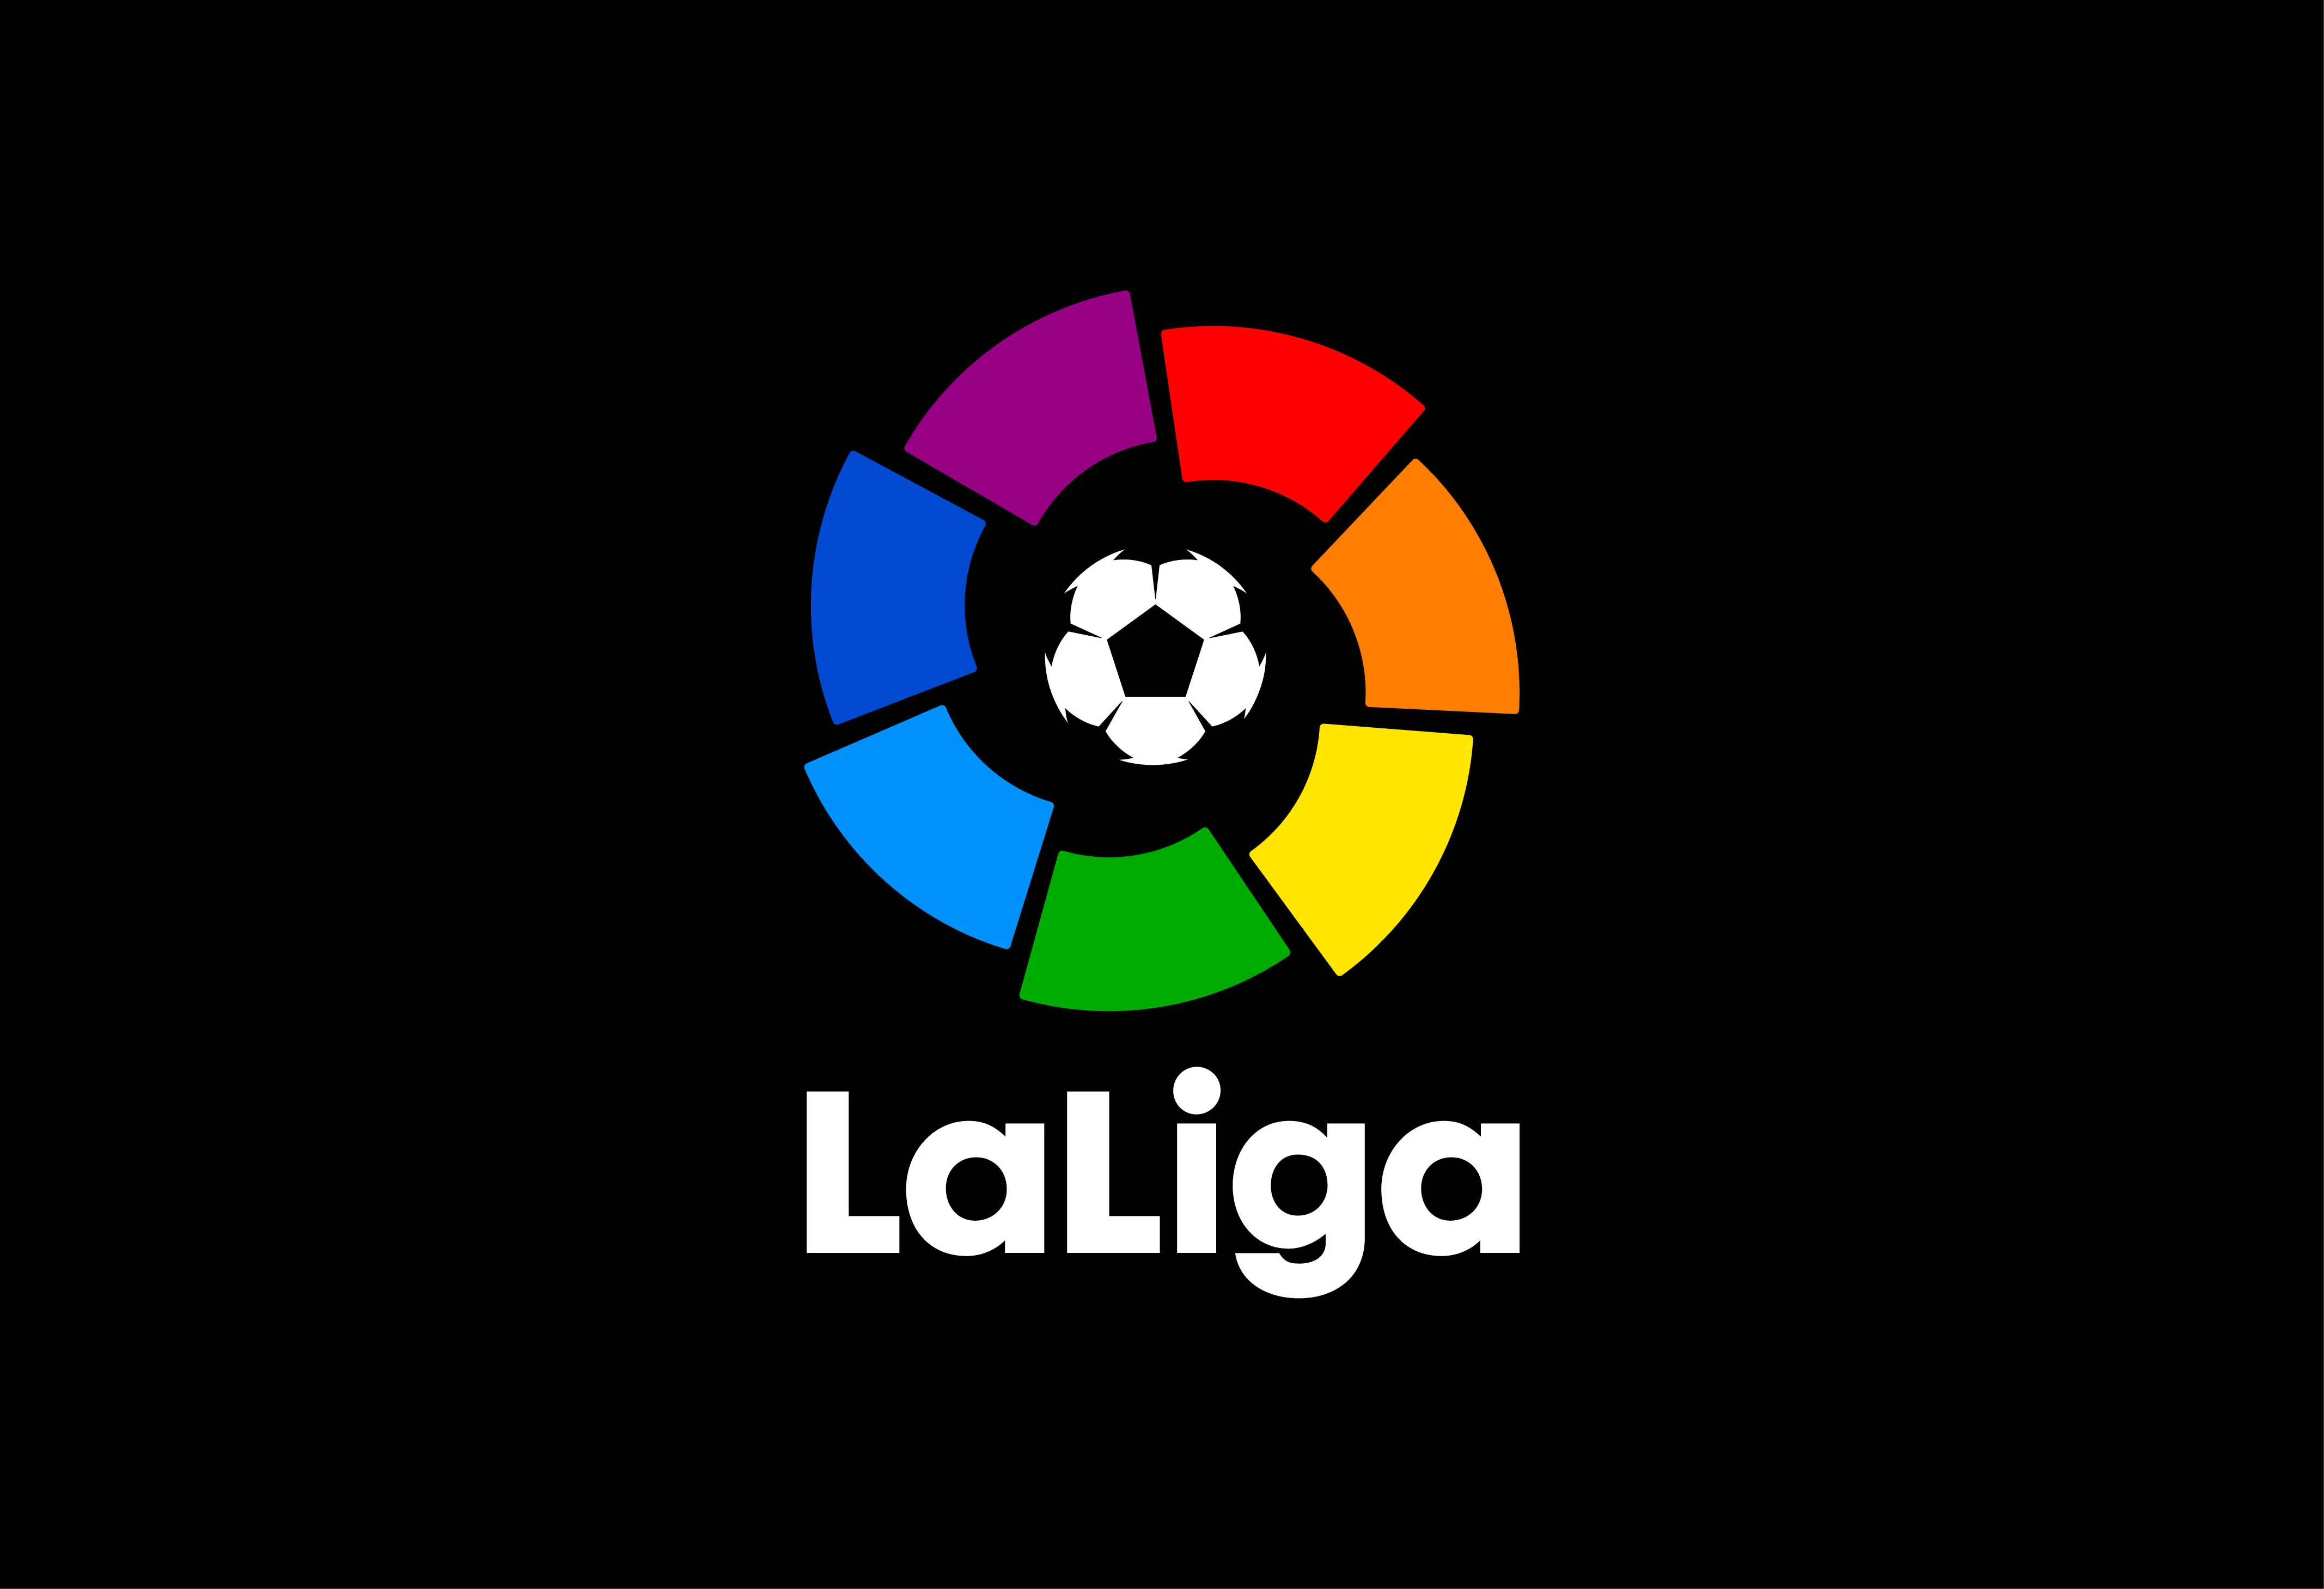 La Liga, 6. kolejka, 18.09.22. godz. 21:00Atletico - Real MadrytTyp: X - remis